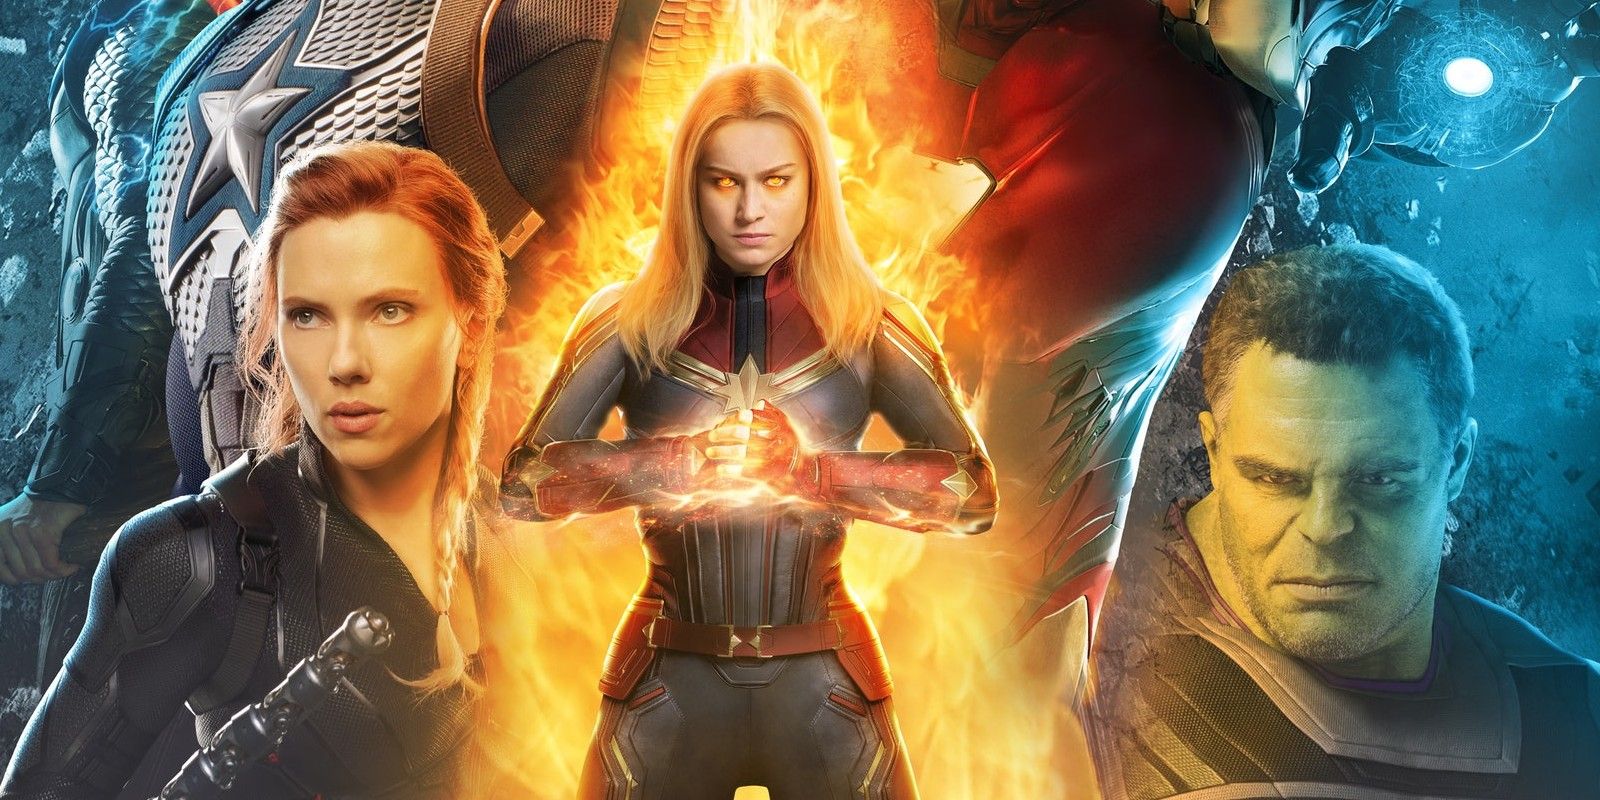 Avengers Endgame alternate poster header